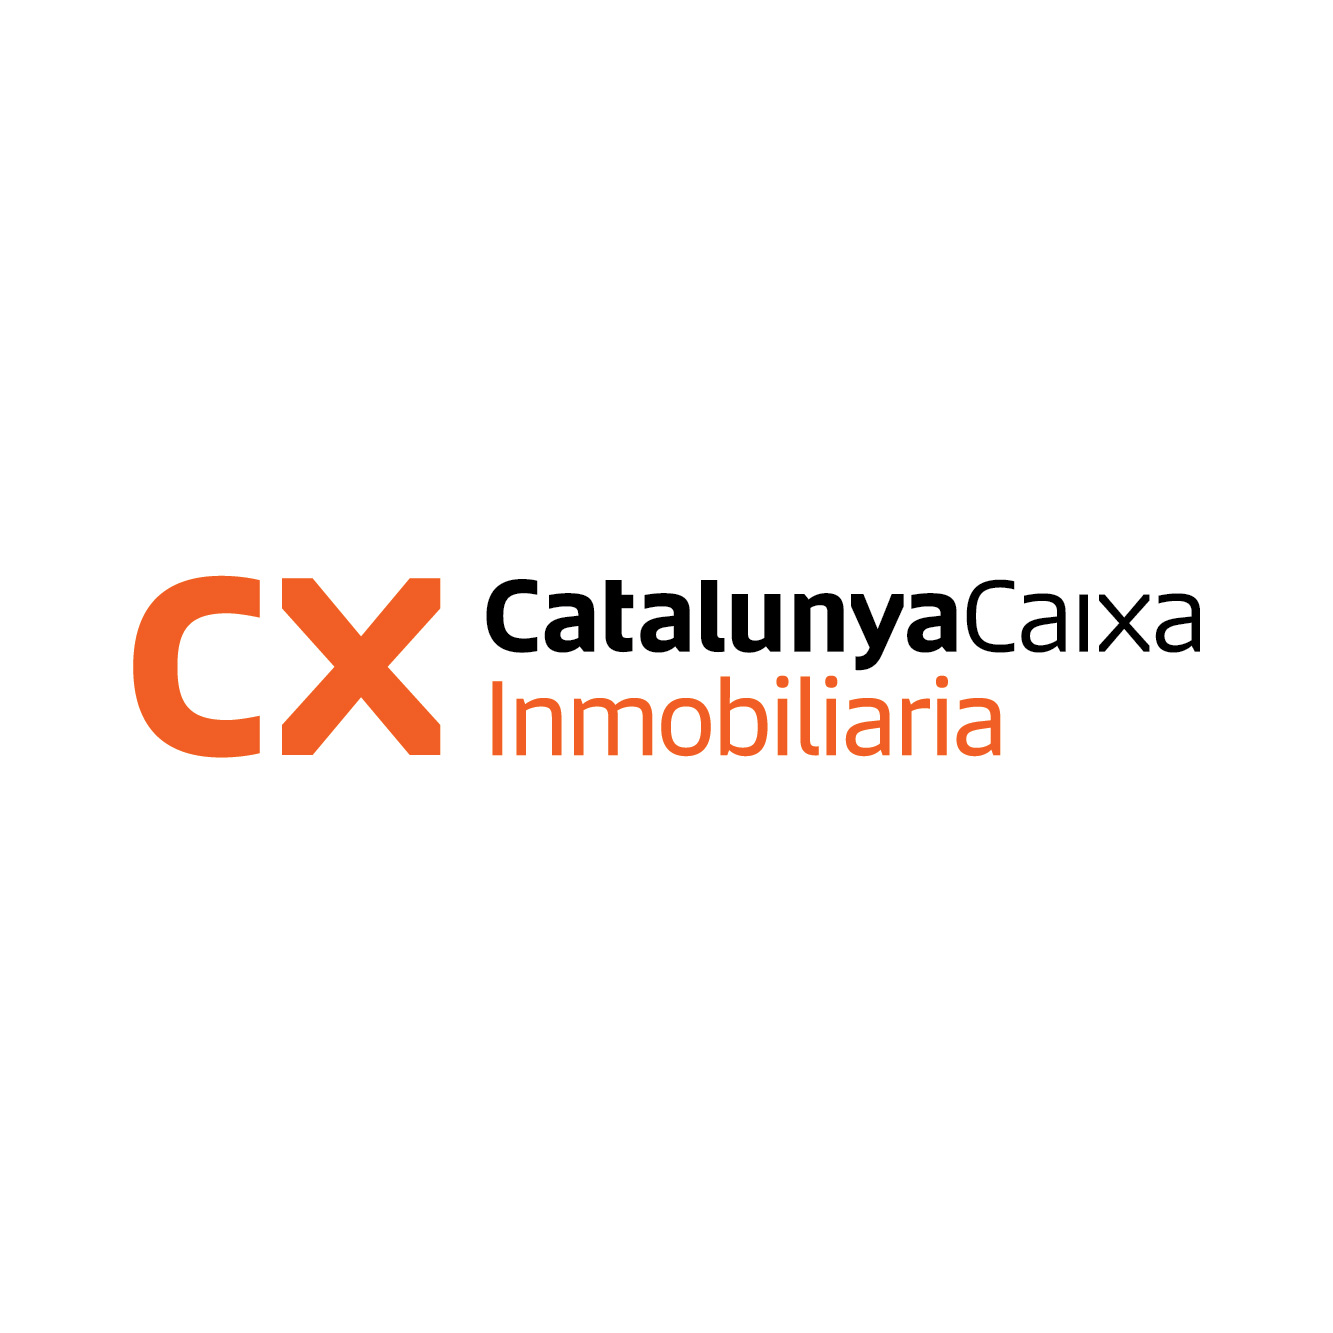 CatalunyaCaixa Inmobiliaria